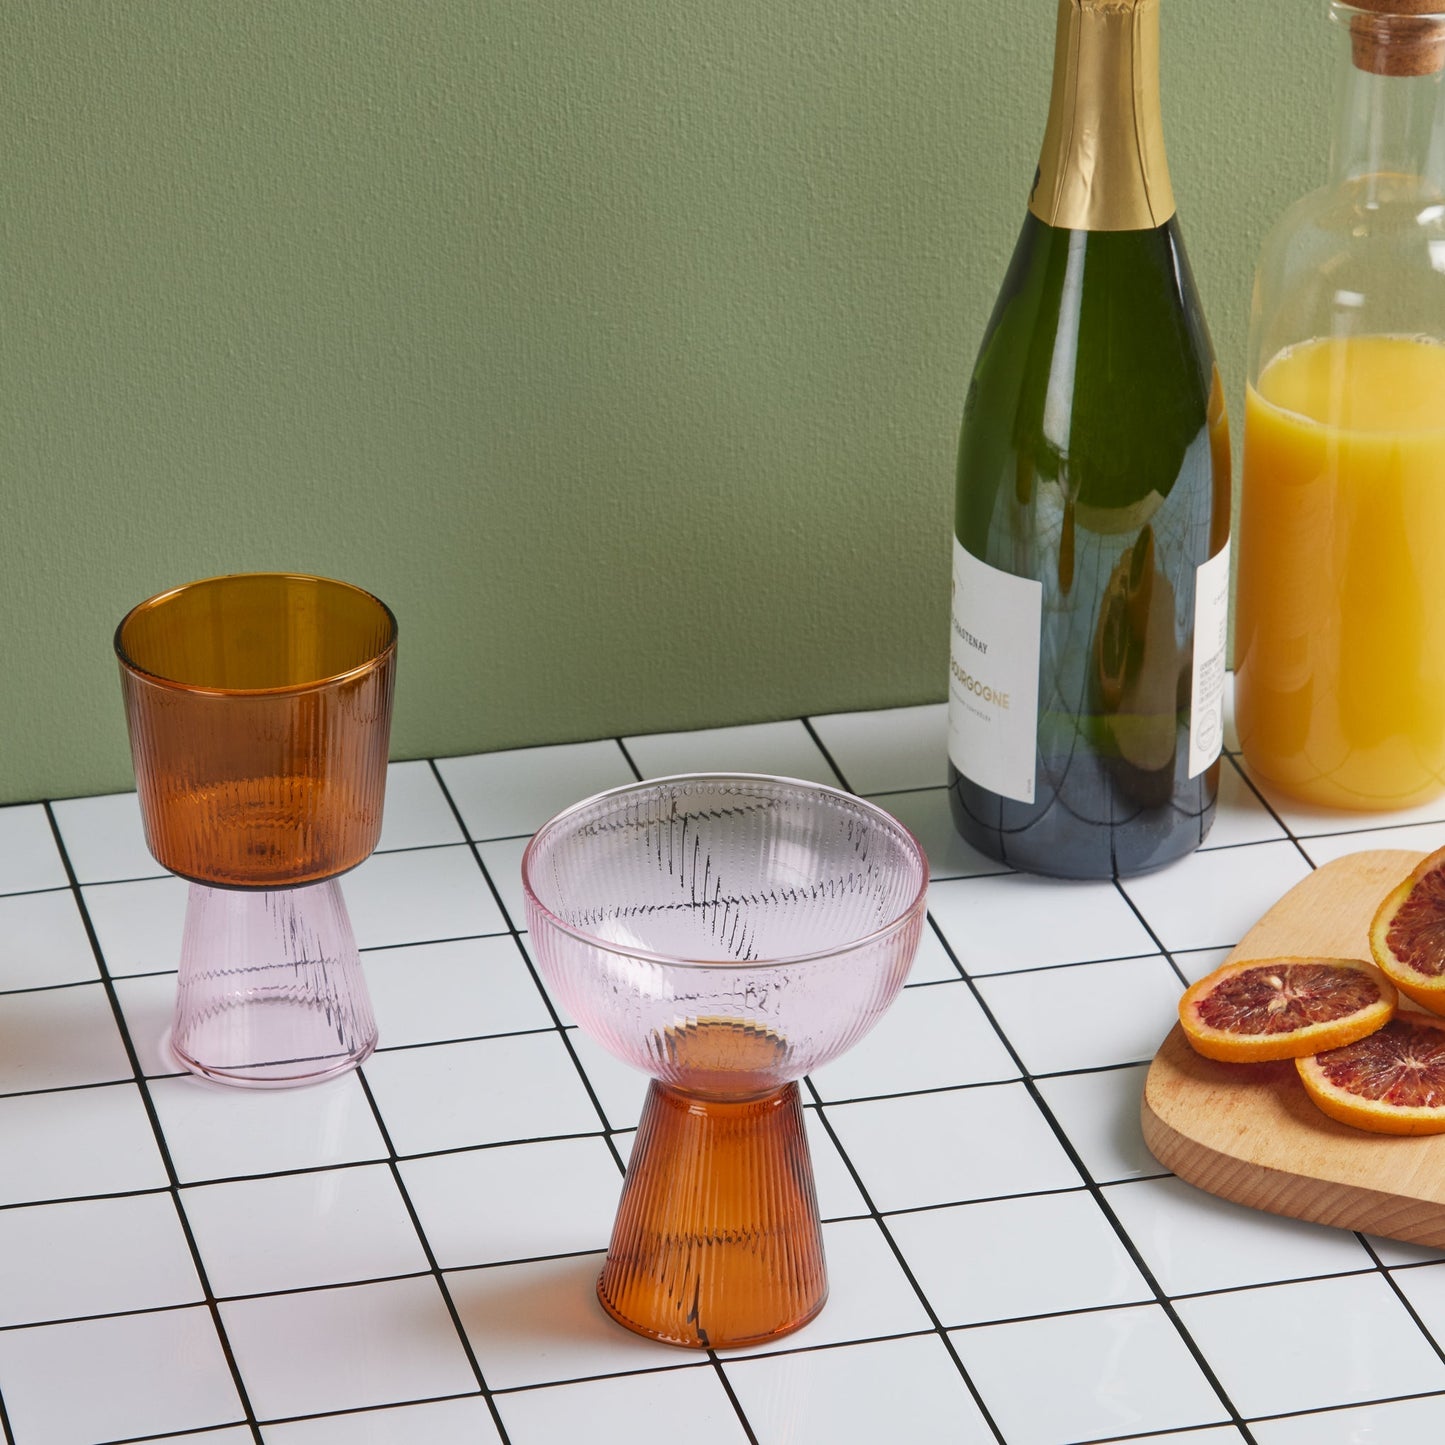 Set of 4 Oorun Didun Glass Cups by Yinka Ilori - Pink/ Amber